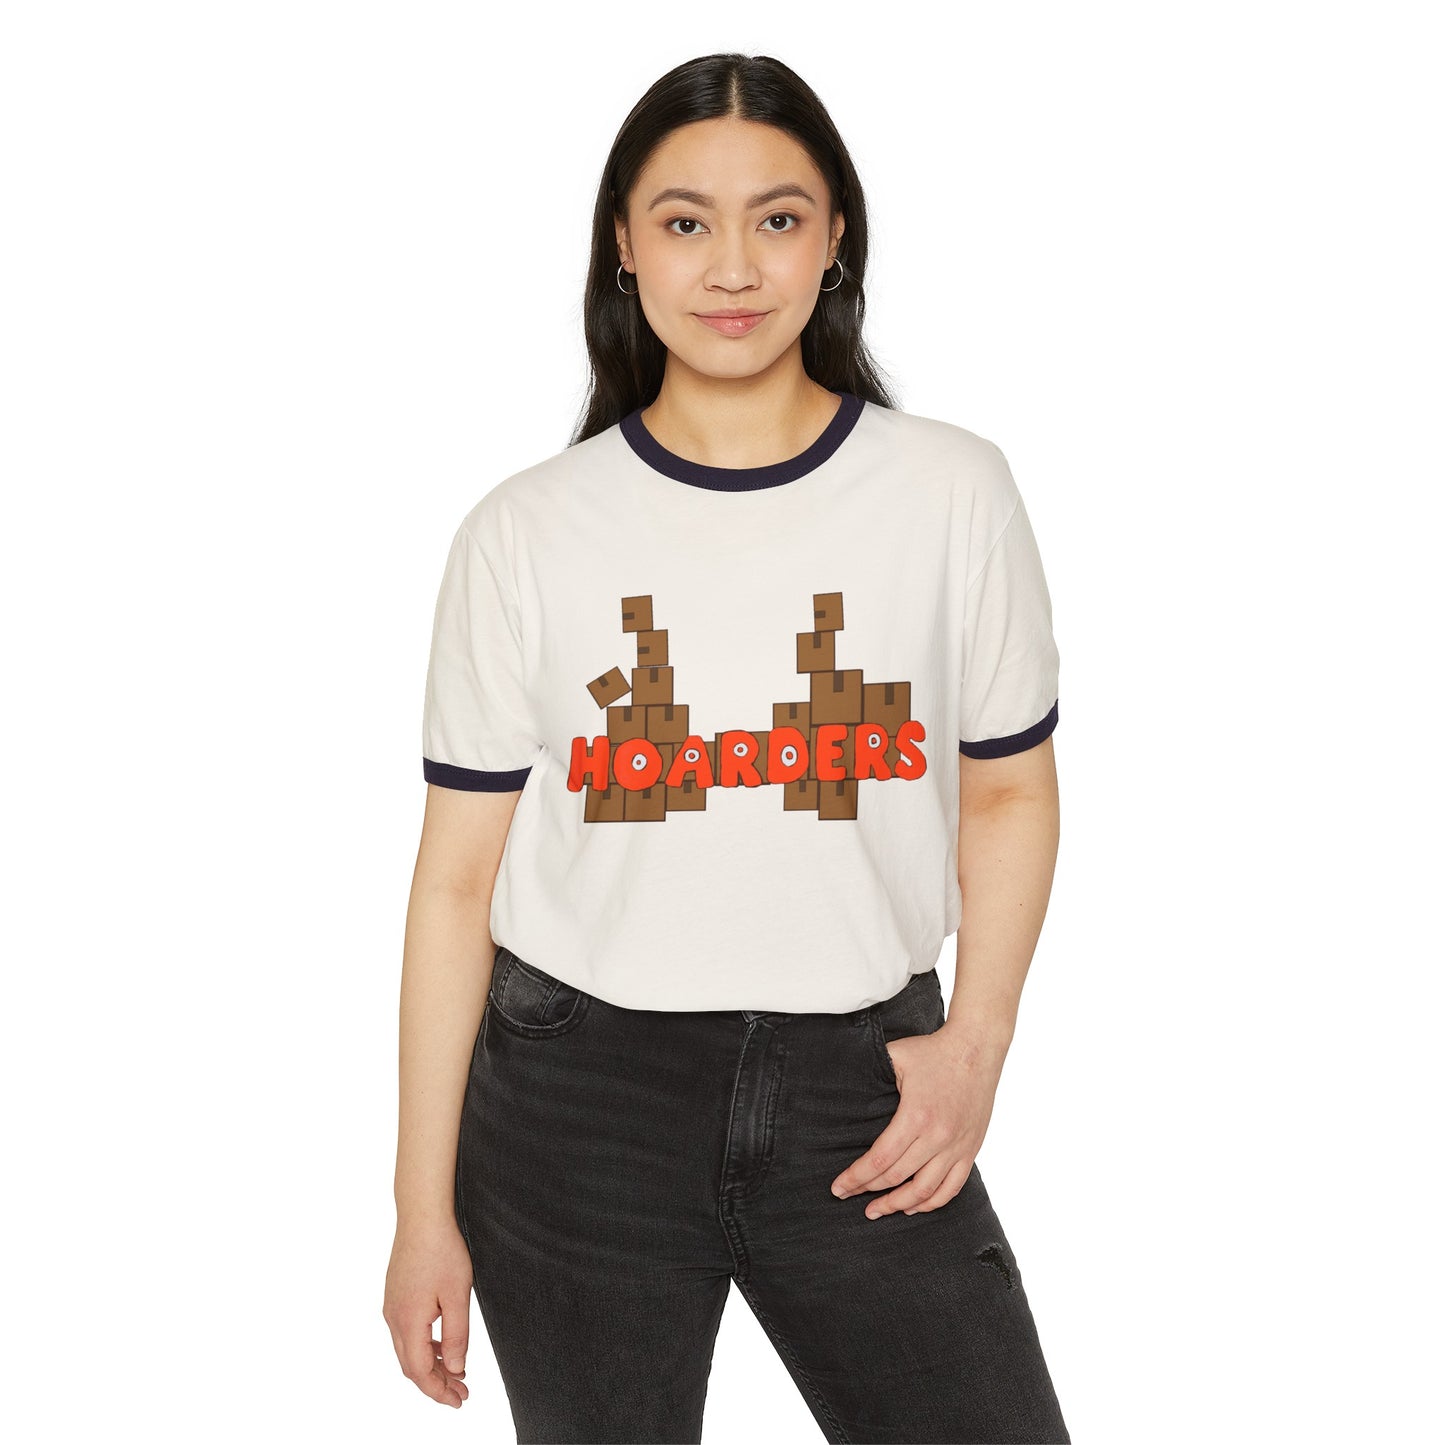 Hoarders Unisex Cotton Ringer T-Shirt